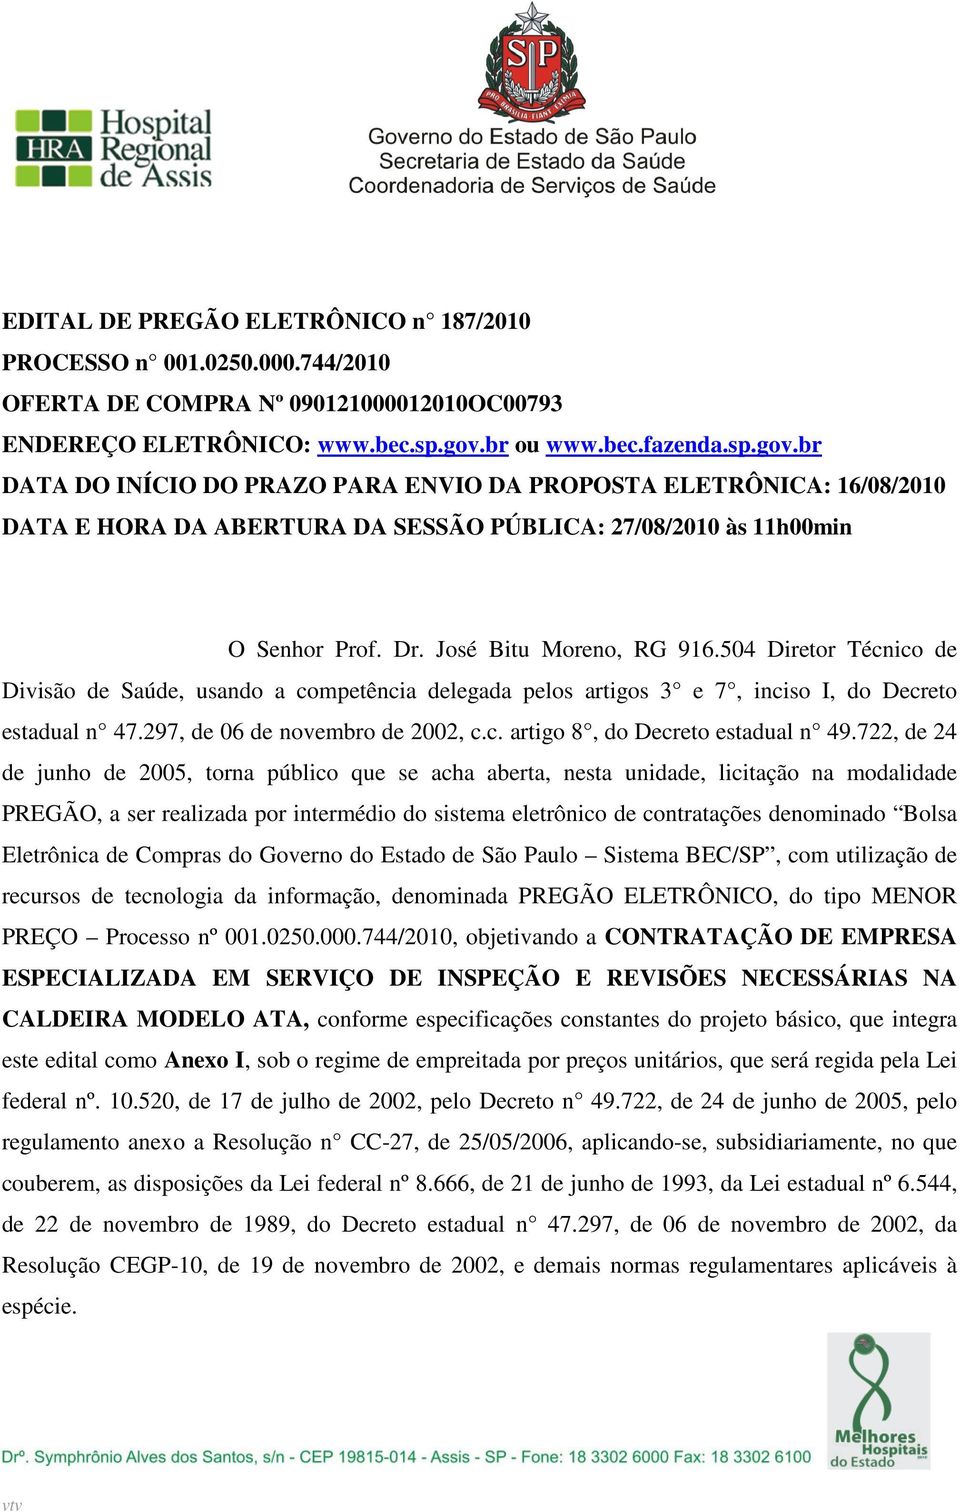 José Bitu Moreno, RG 916.504 Diretor Técnico de Divisão de Saúde, usando a competência delegada pelos artigos 3 e 7, inciso I, do Decreto estadual n 47.297, de 06 de novembro de 2002, c.c. artigo 8, do Decreto estadual n 49.